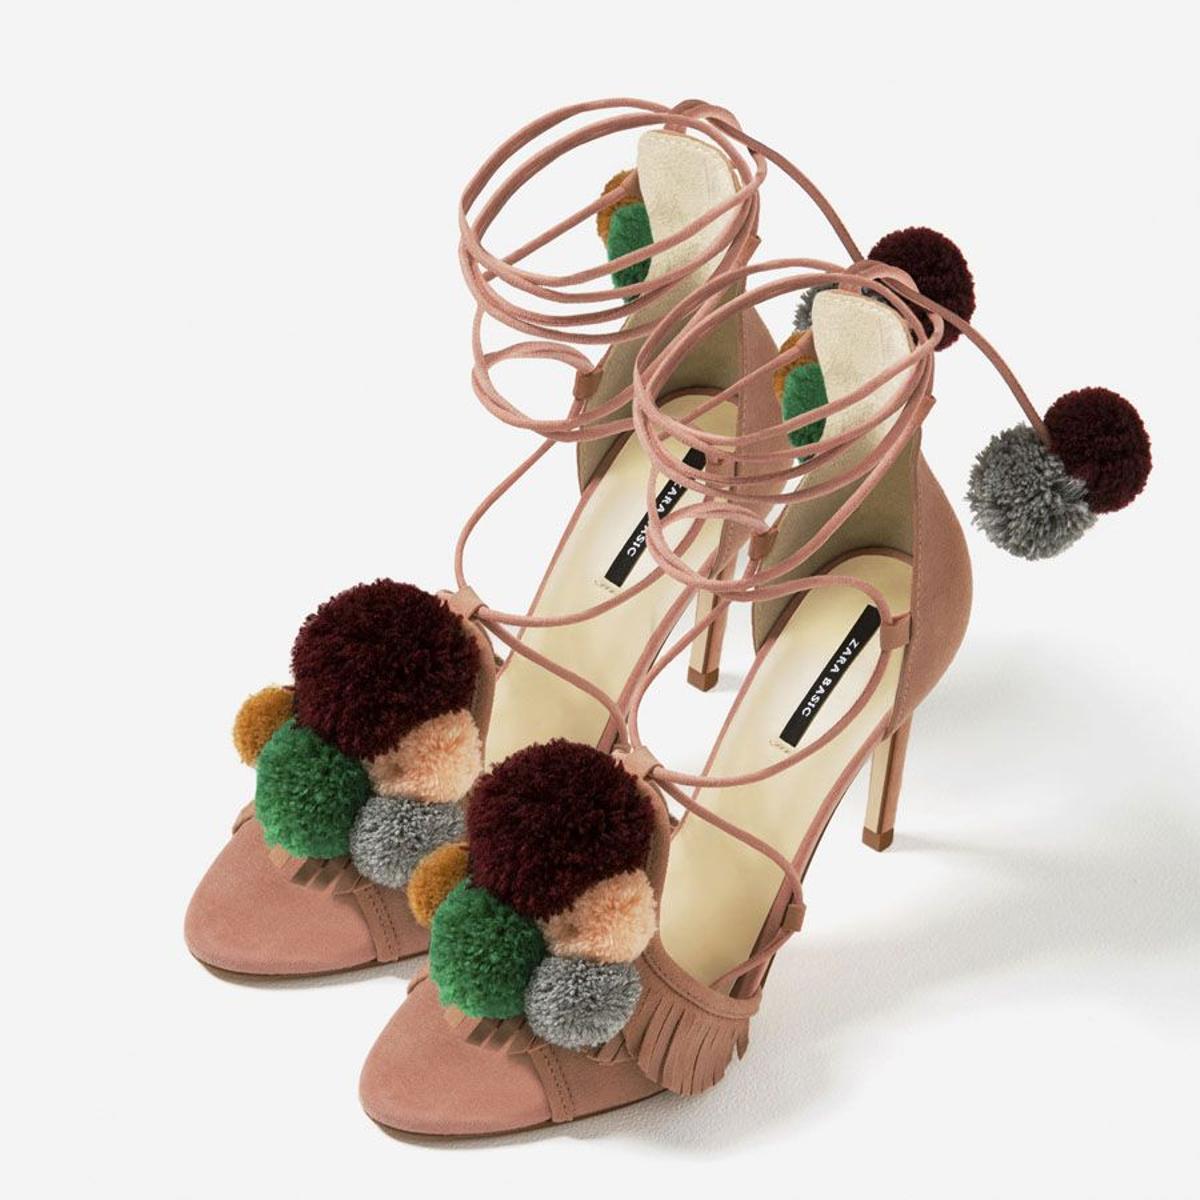 Rebajas 2017- los zapatos de Zara que vas a querer: sandalias con pompones